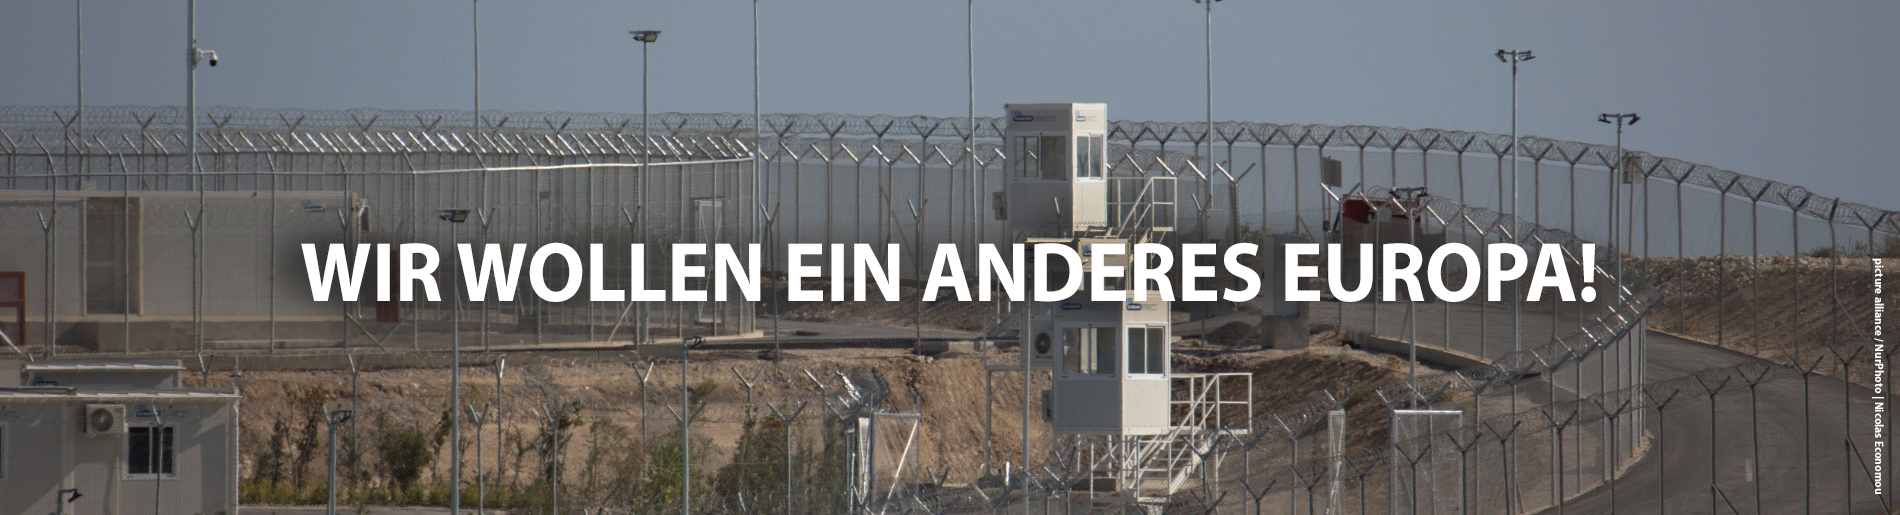 Wir wollen ein anderes Europa - Bild von einen Internierungslager für Asylsuchende - von proasyl.de